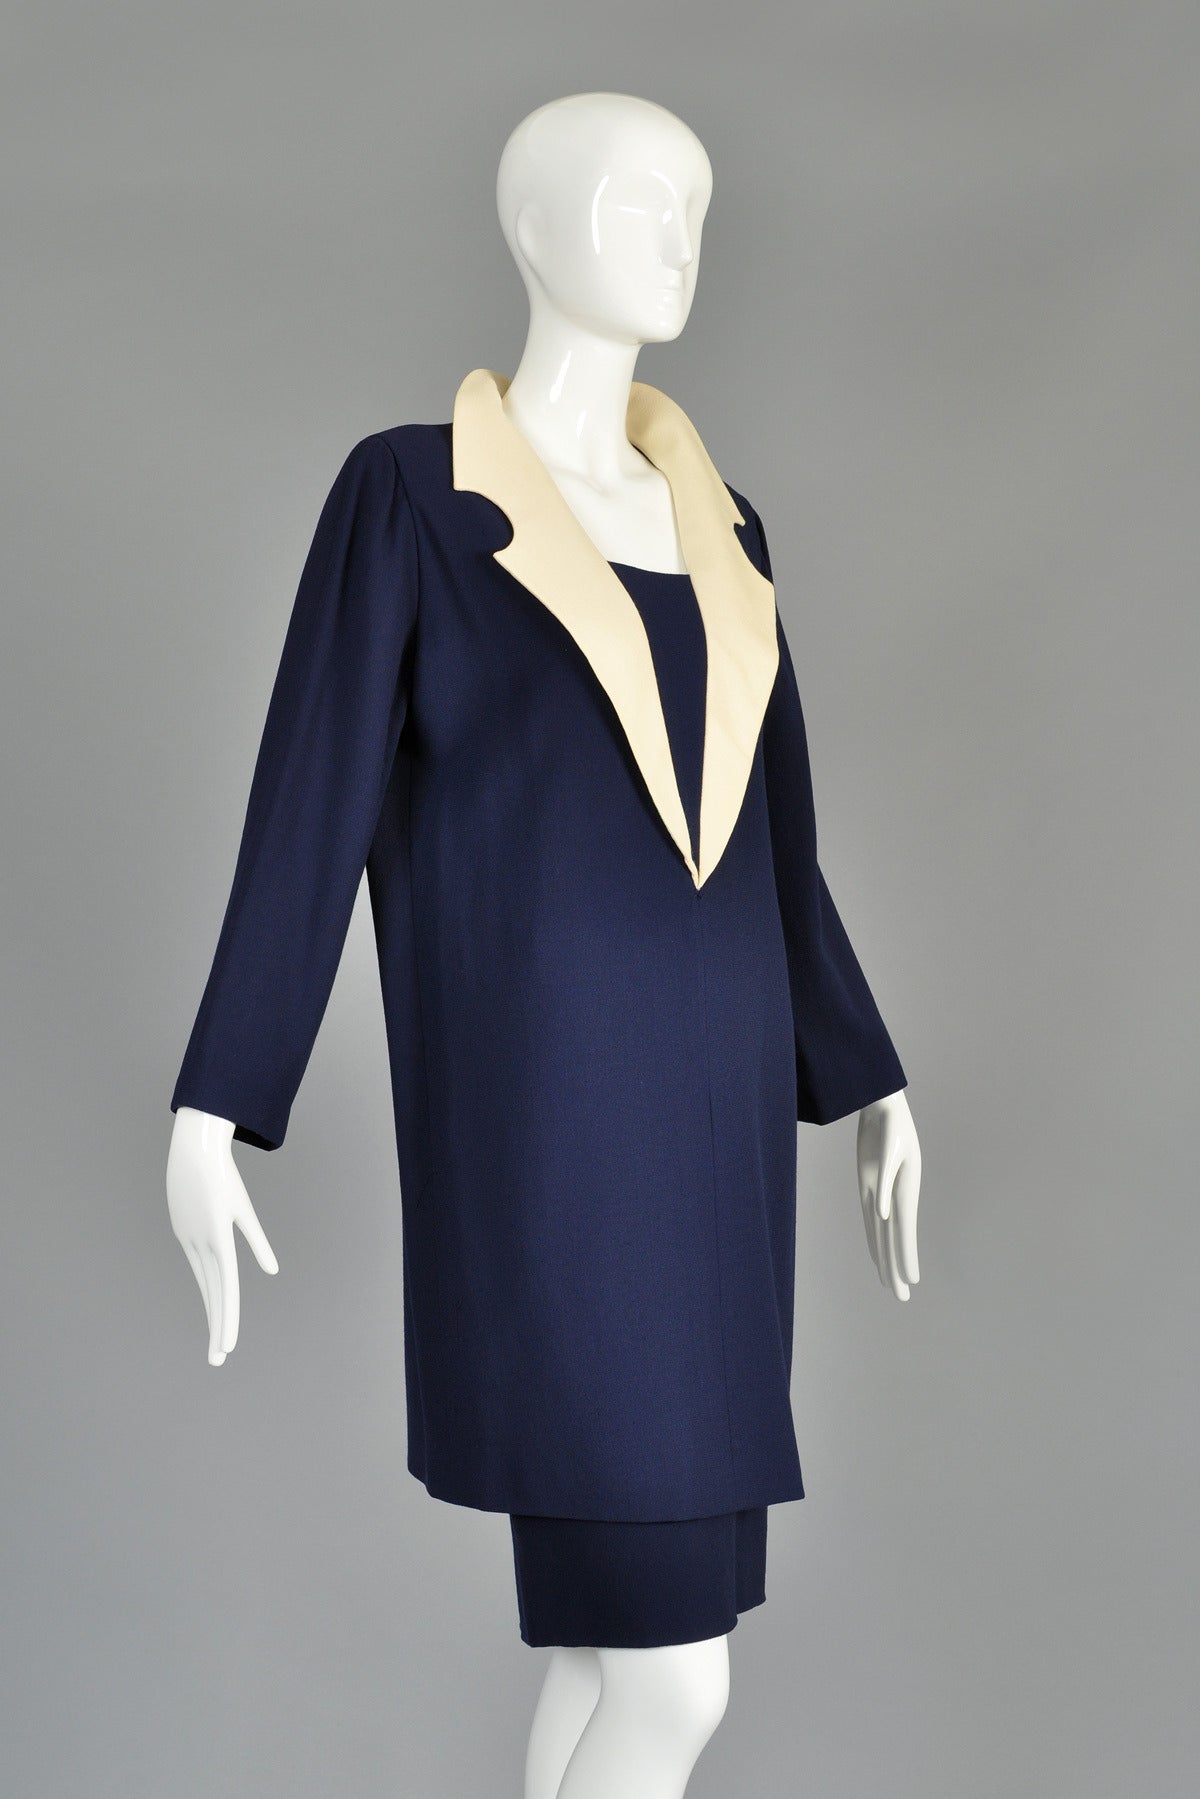 c. 1992 Pierre Cardin Haute Couture Skirt plus Tunic Shift Dress For Sale 2